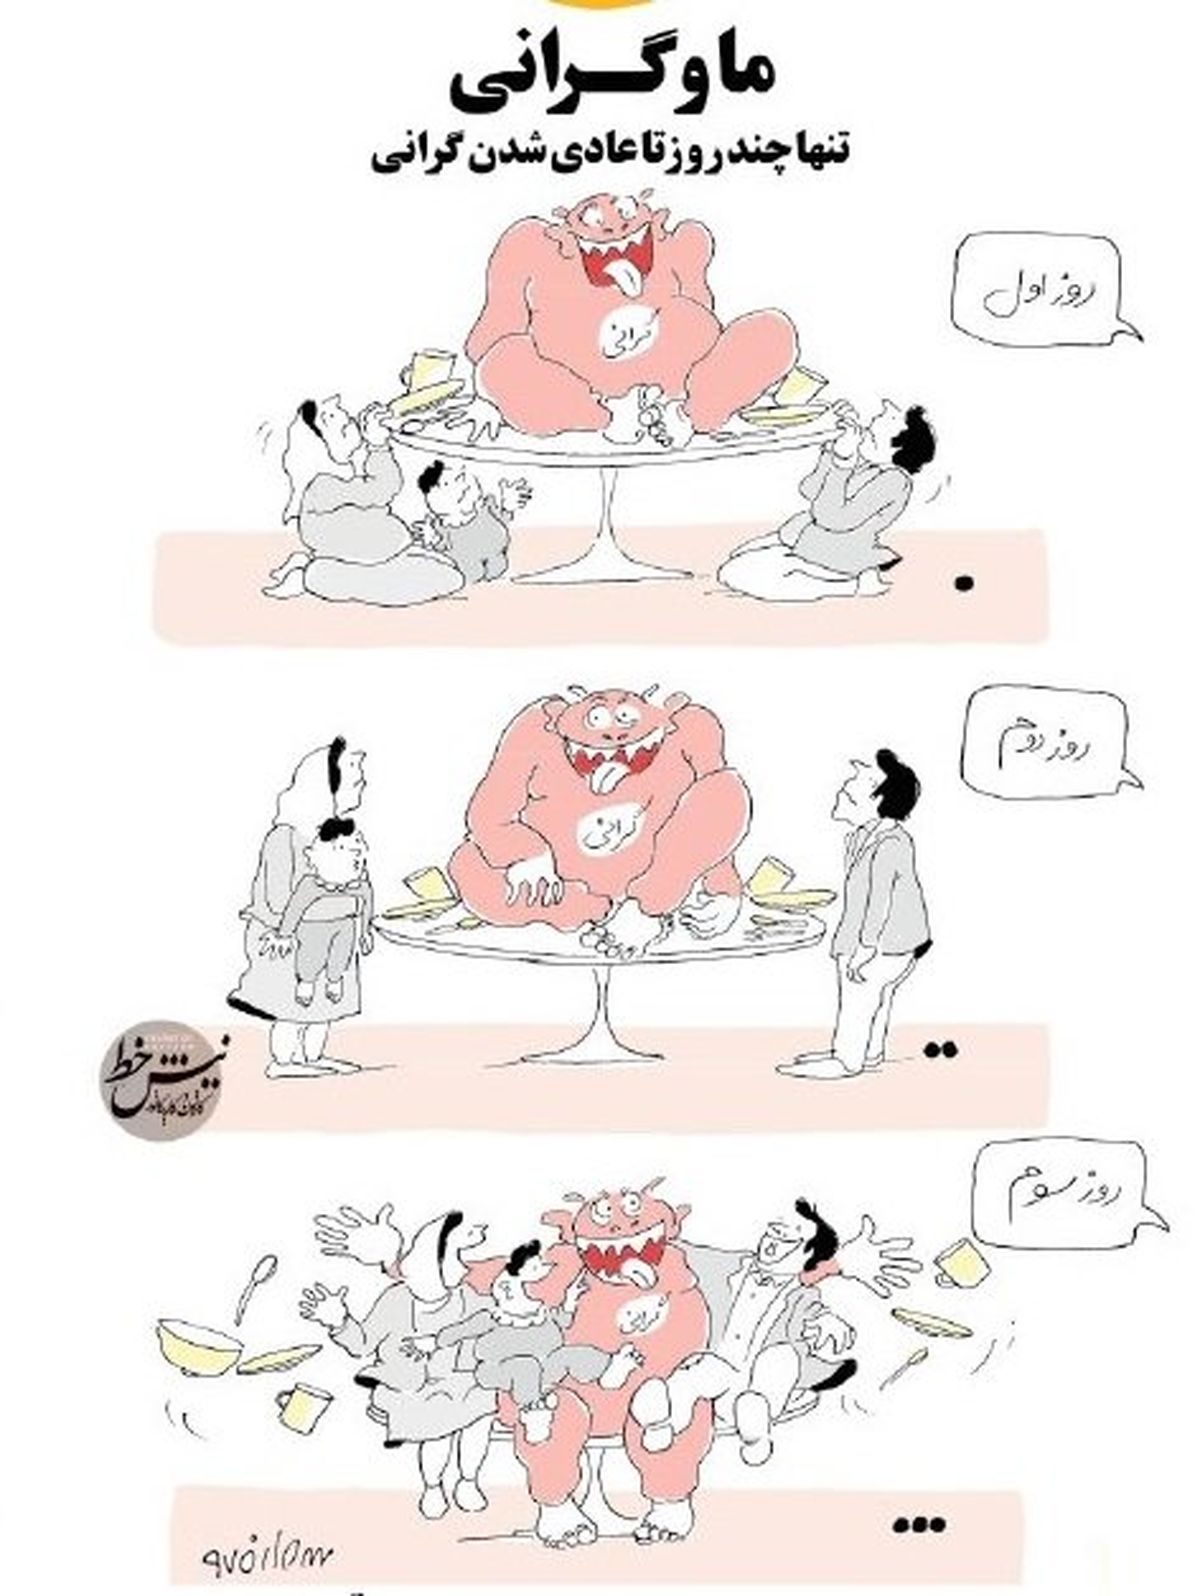 کارتون روز: ایرانی ها چگونه به گرانی عادت می کنند؟